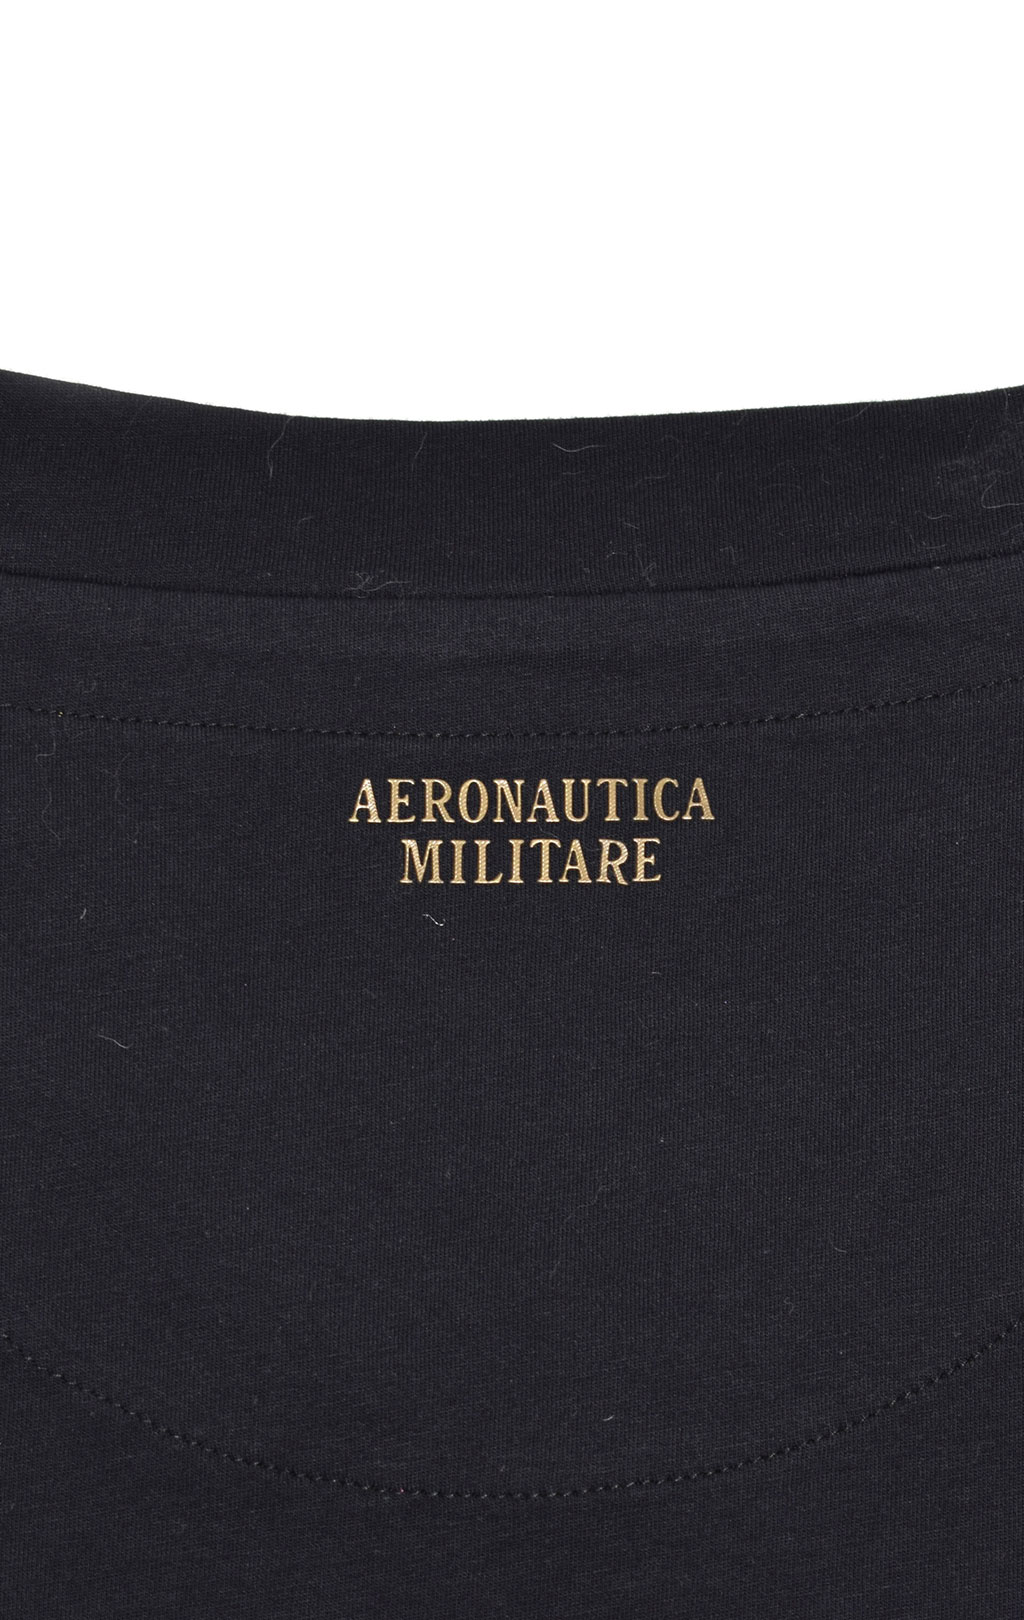 Женская футболка AERONAUTICA MILITARE FW 19/20 nero (TS 1687) 